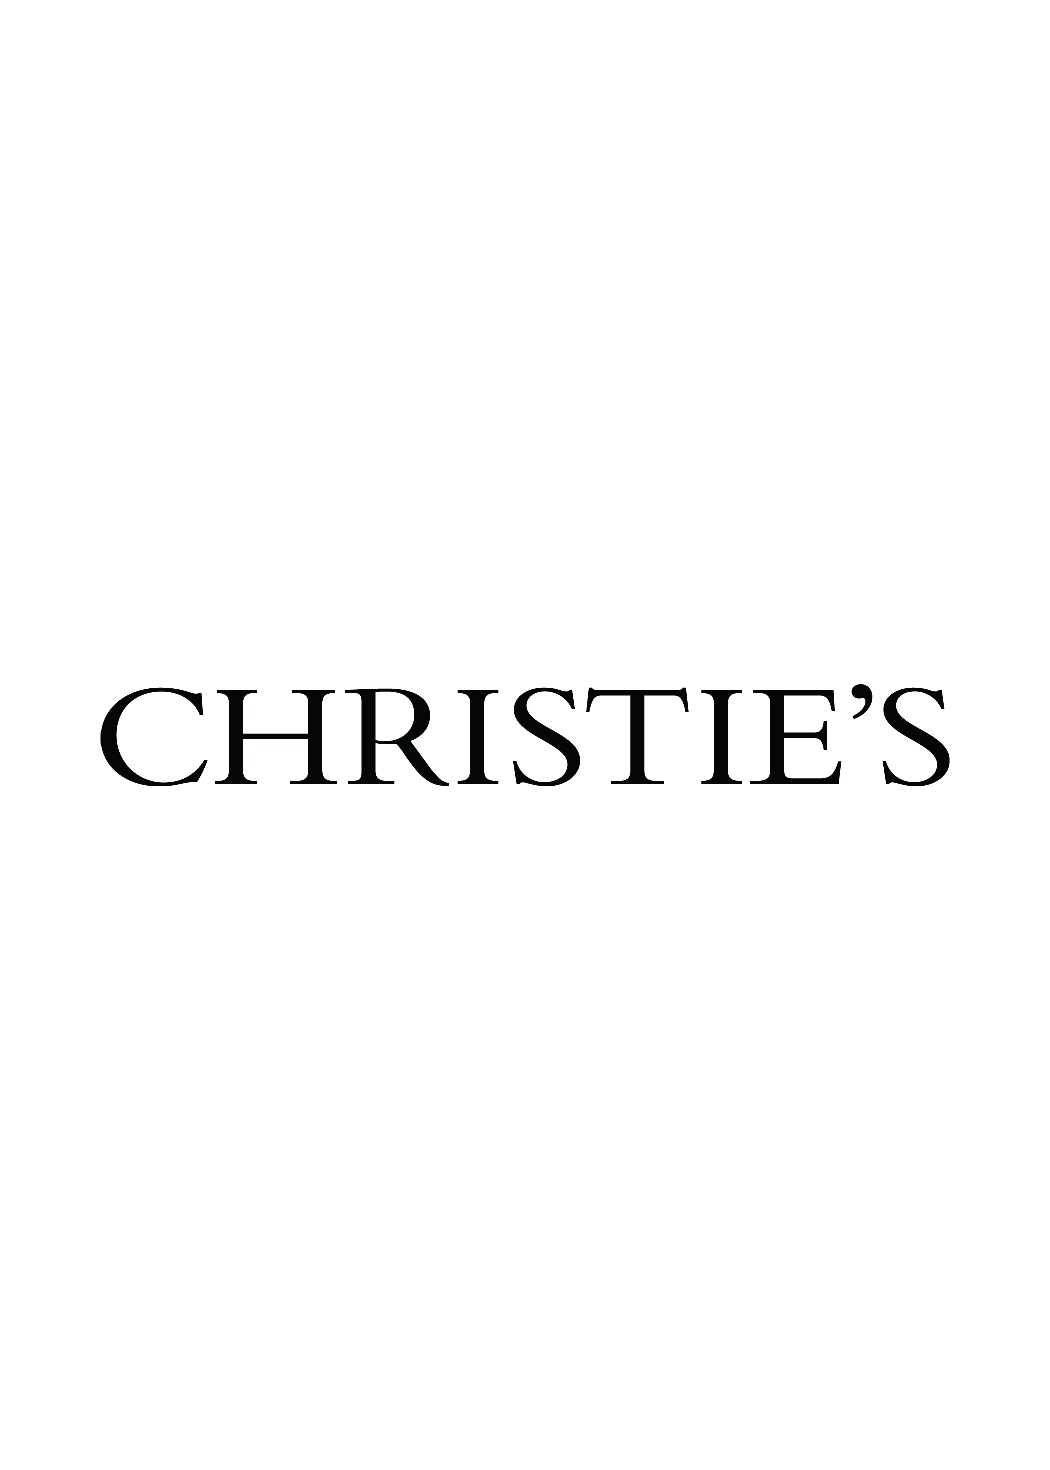 Christies_Images-03.jpg